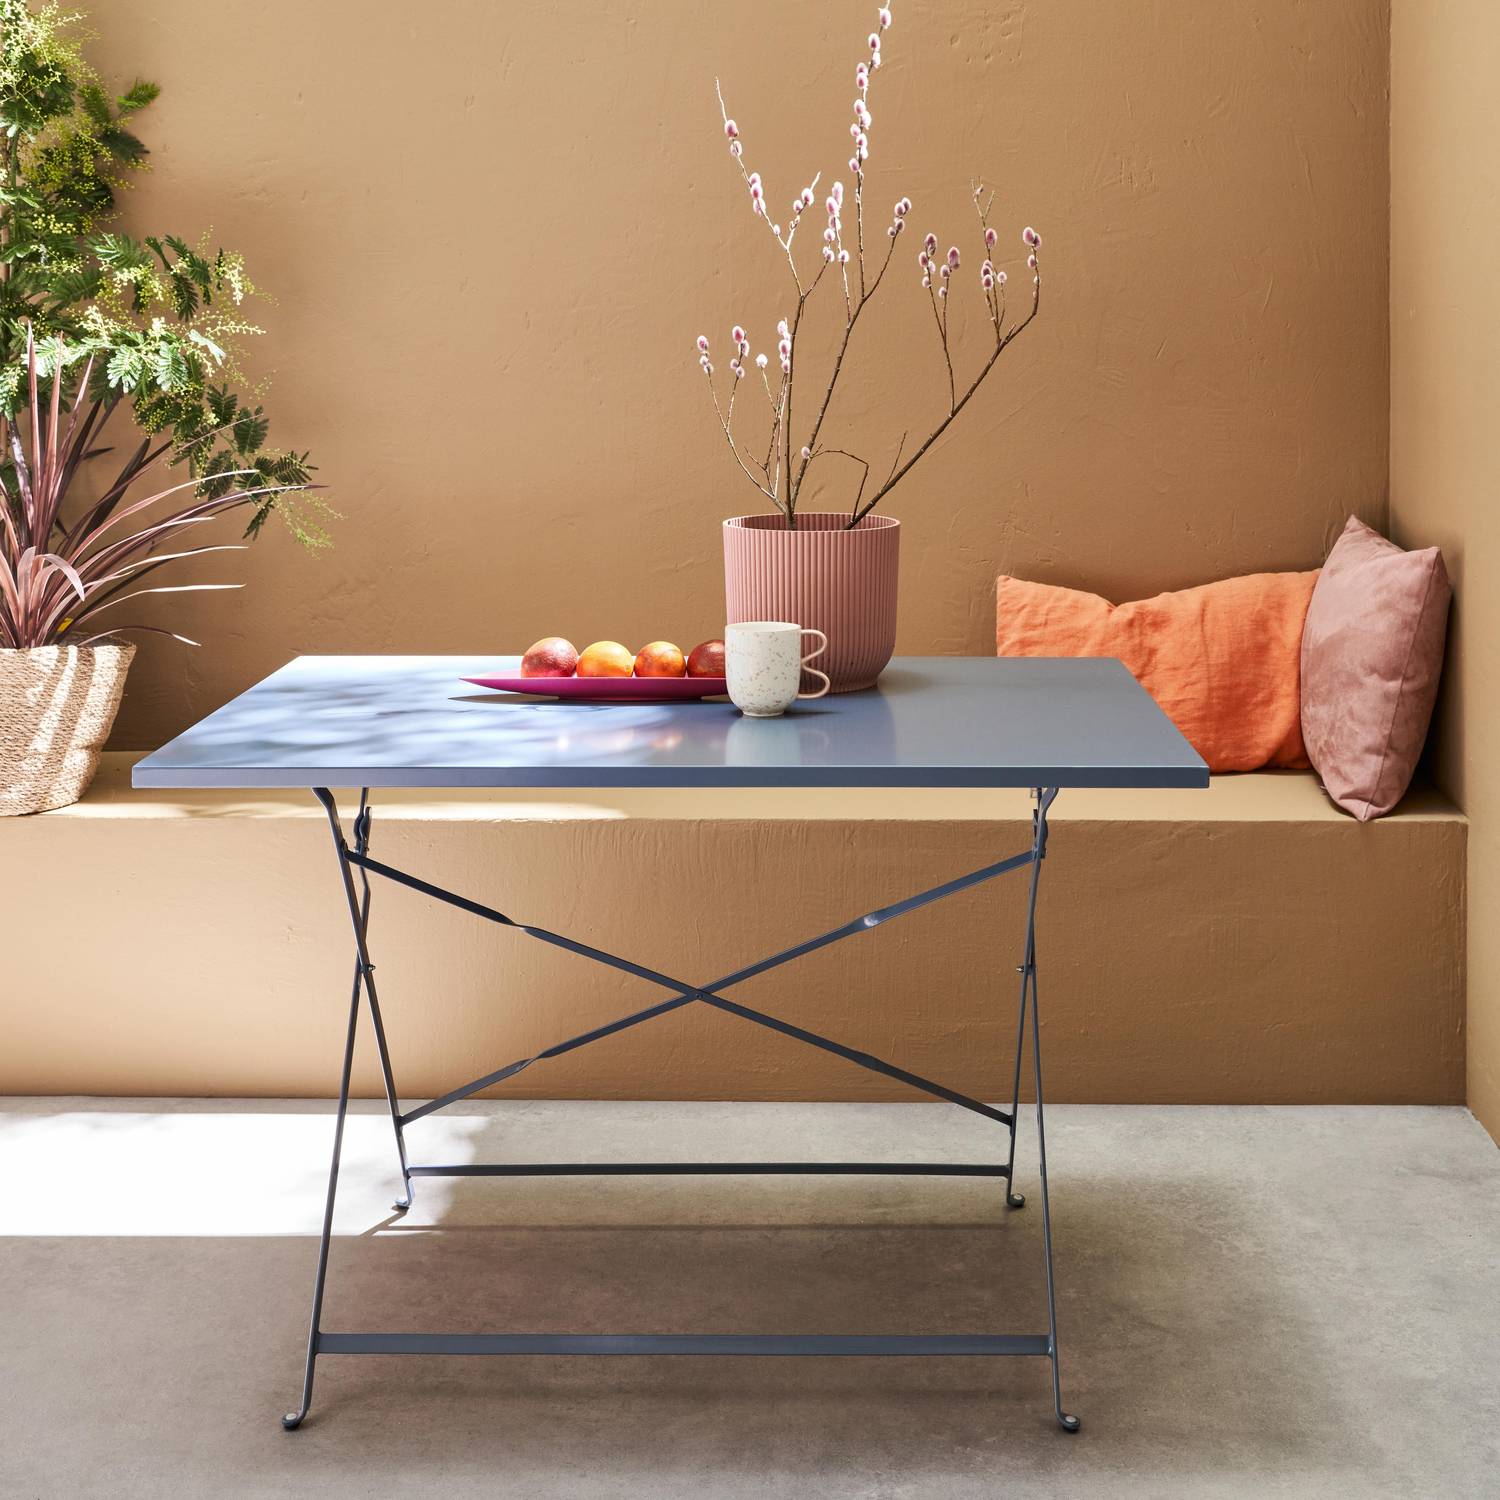 Emilia - Bistro tuintafel opvouwbaar - Rechthoekige tafel 110x70cm van staal met thermolak - Blauwgrijs Photo1